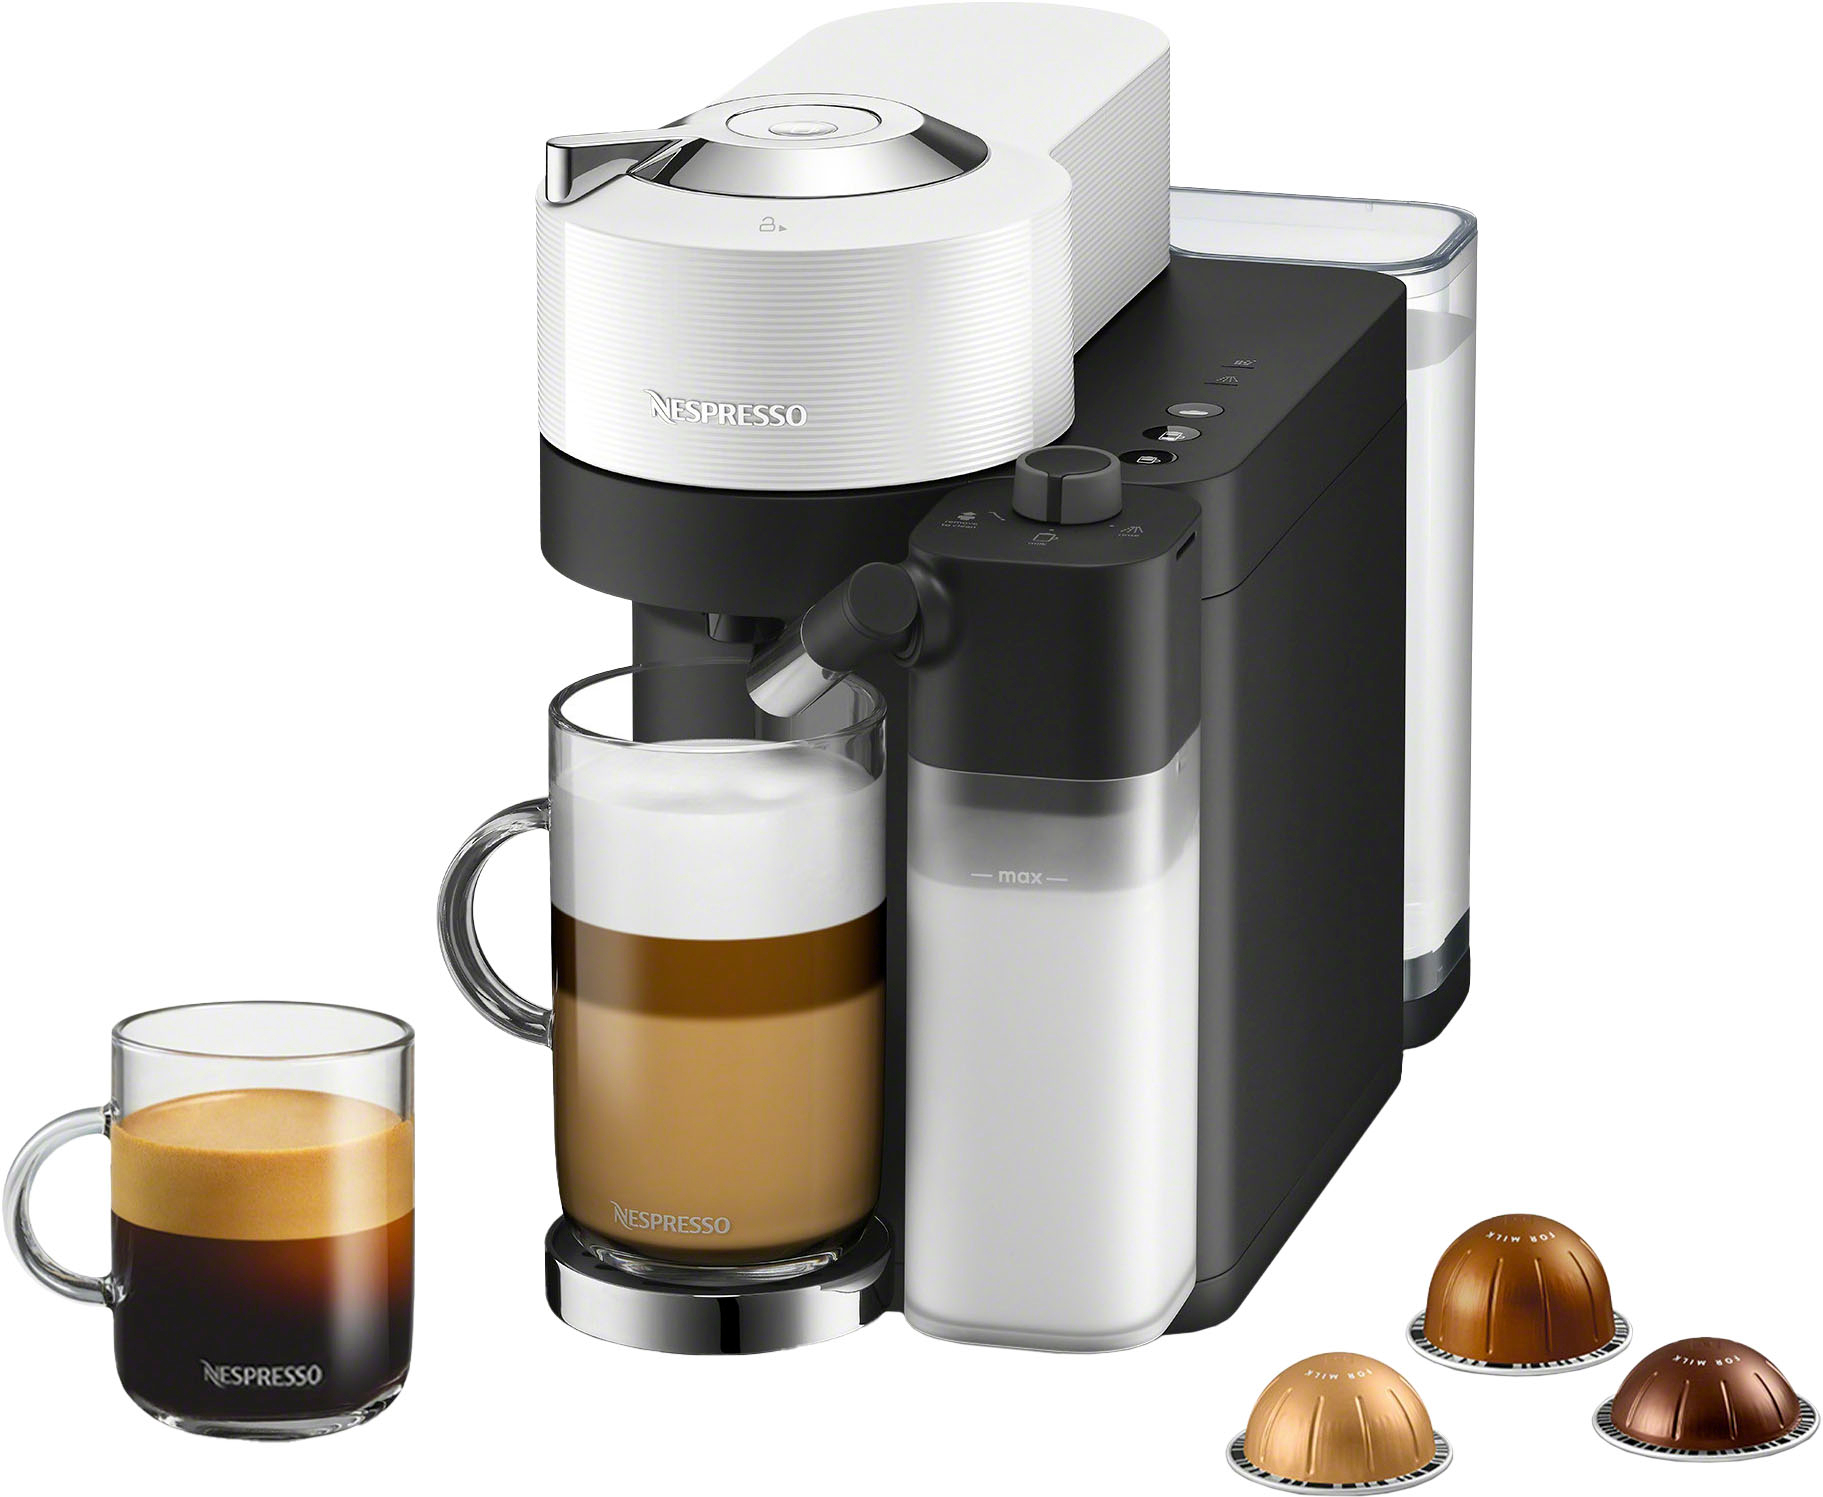 Nespresso Vertuo Next Coffee and Espresso Machine by De'Longhi - Gray